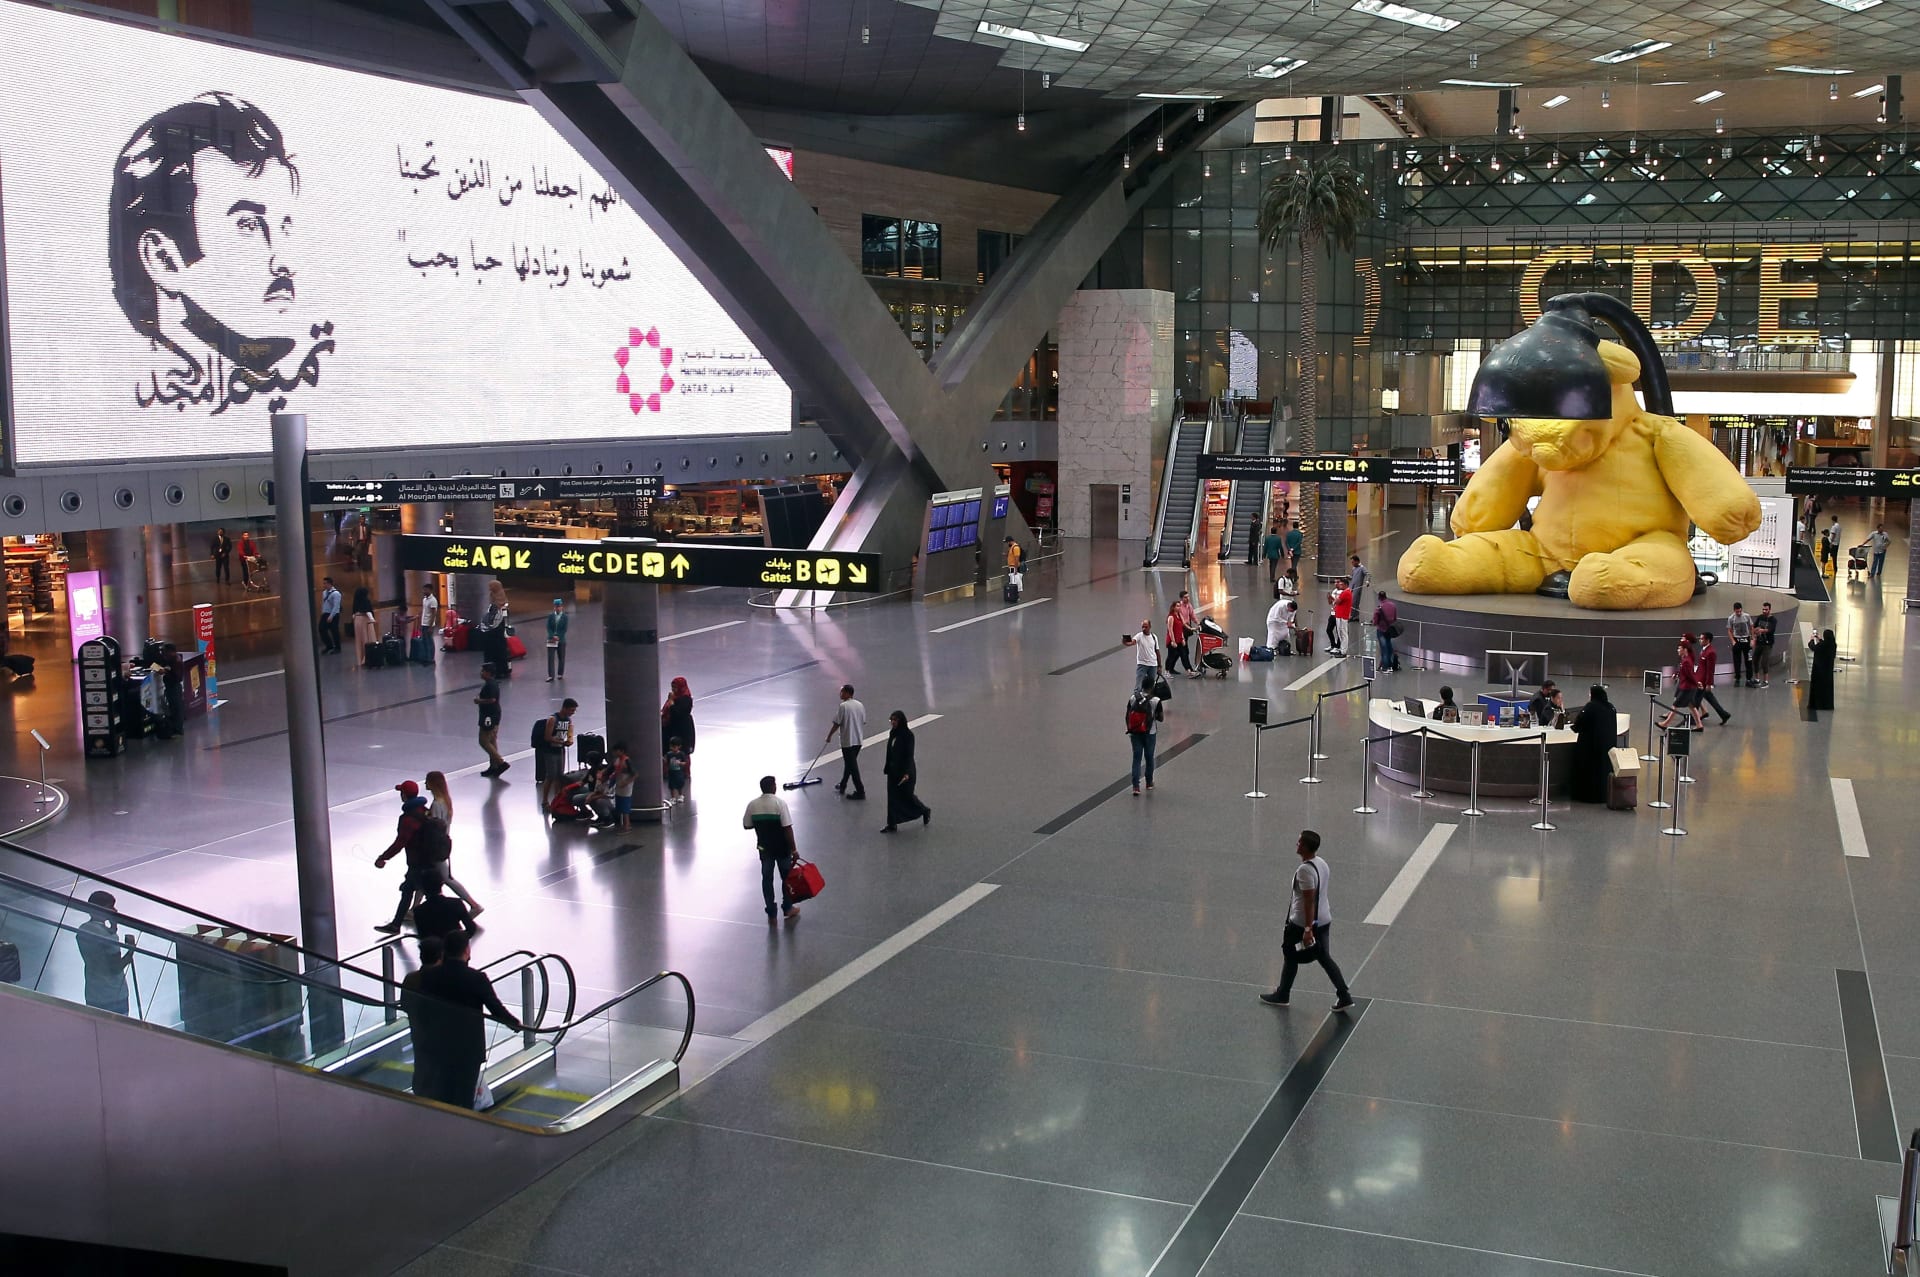 قطر وأستراليا تناقشان قضية "تفتيش سيدات بالإكراه" في مطار حمد الدولي